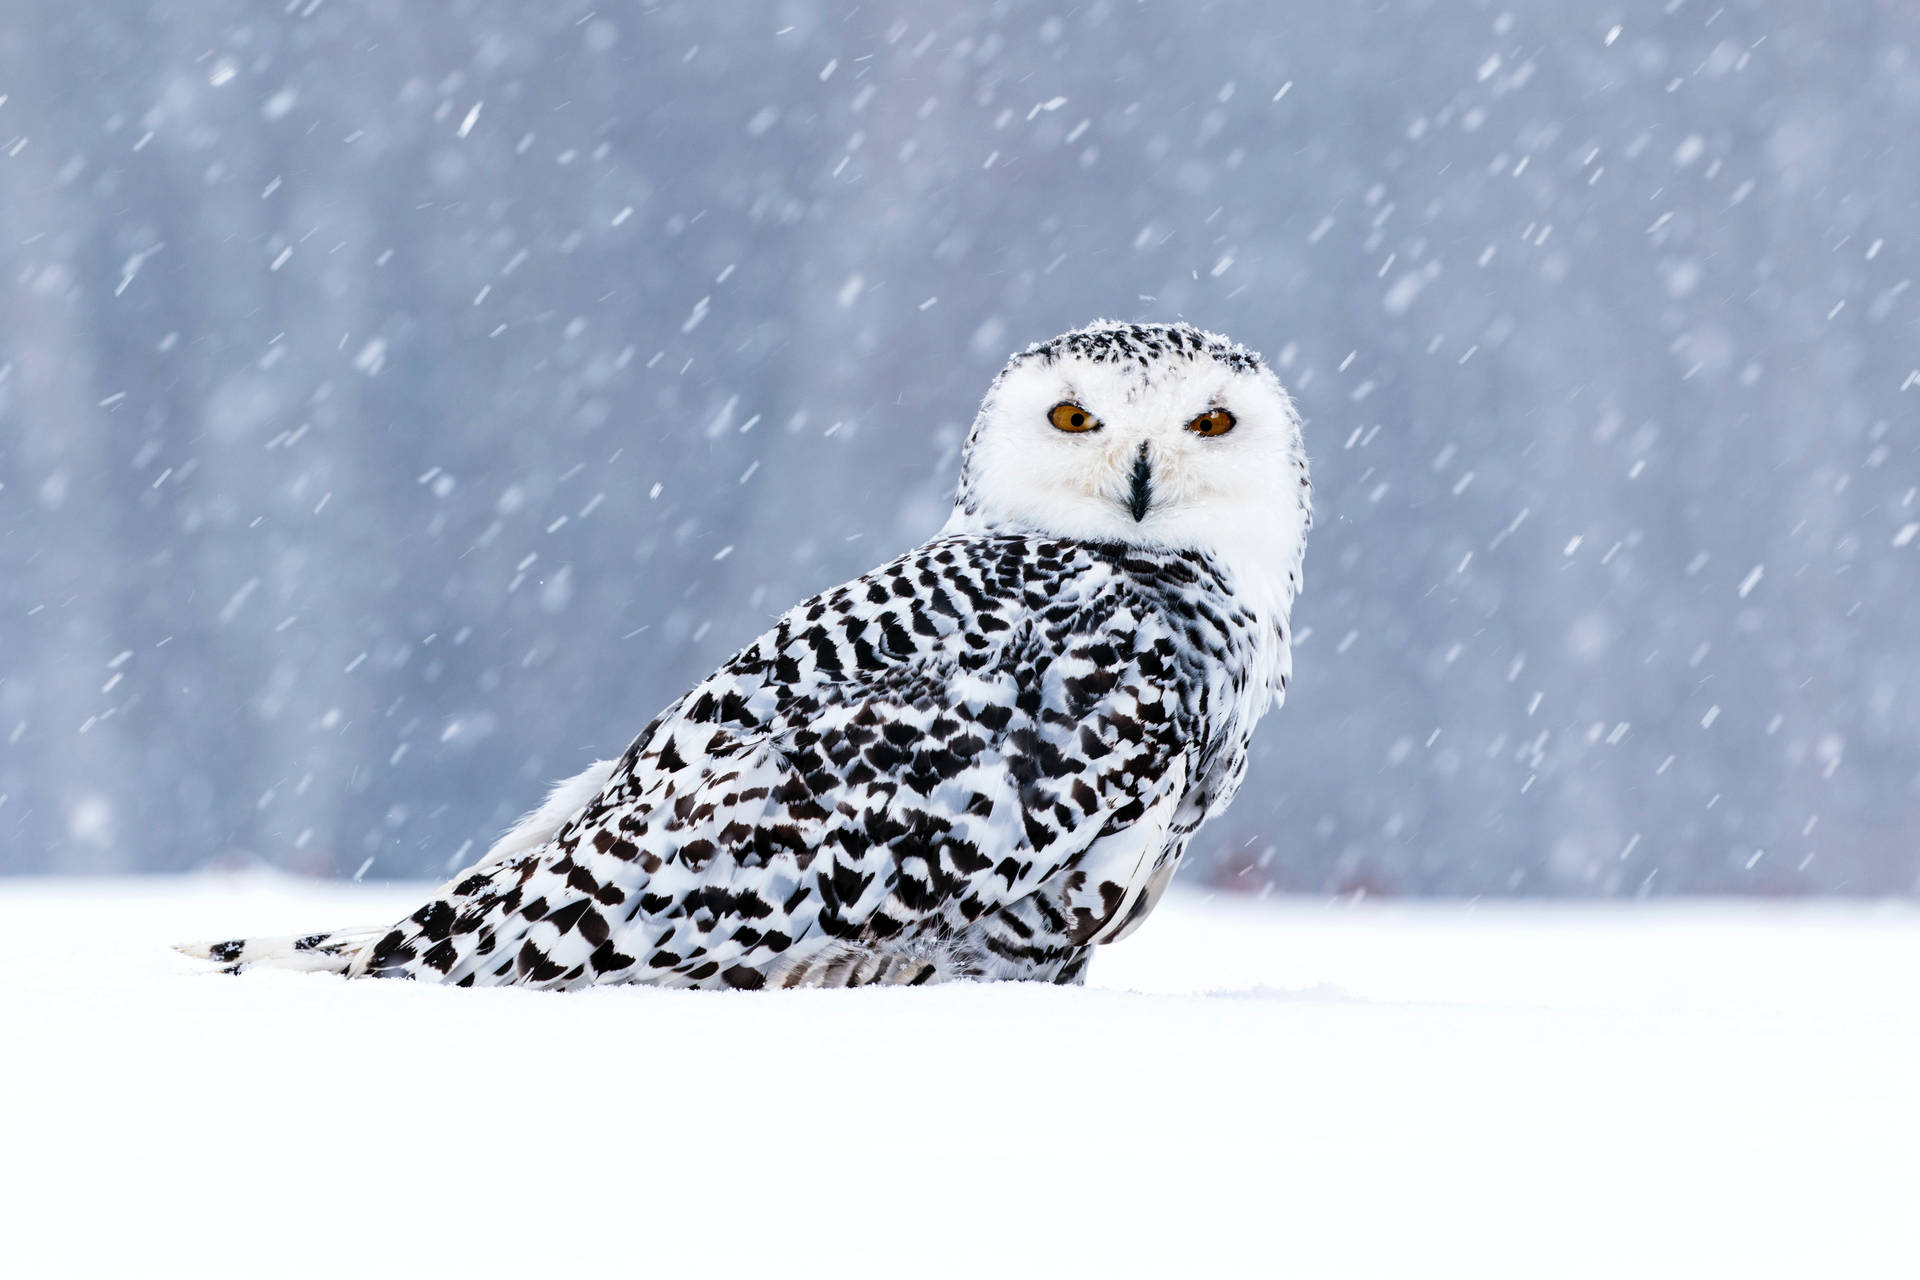 Cute Owl In Winter